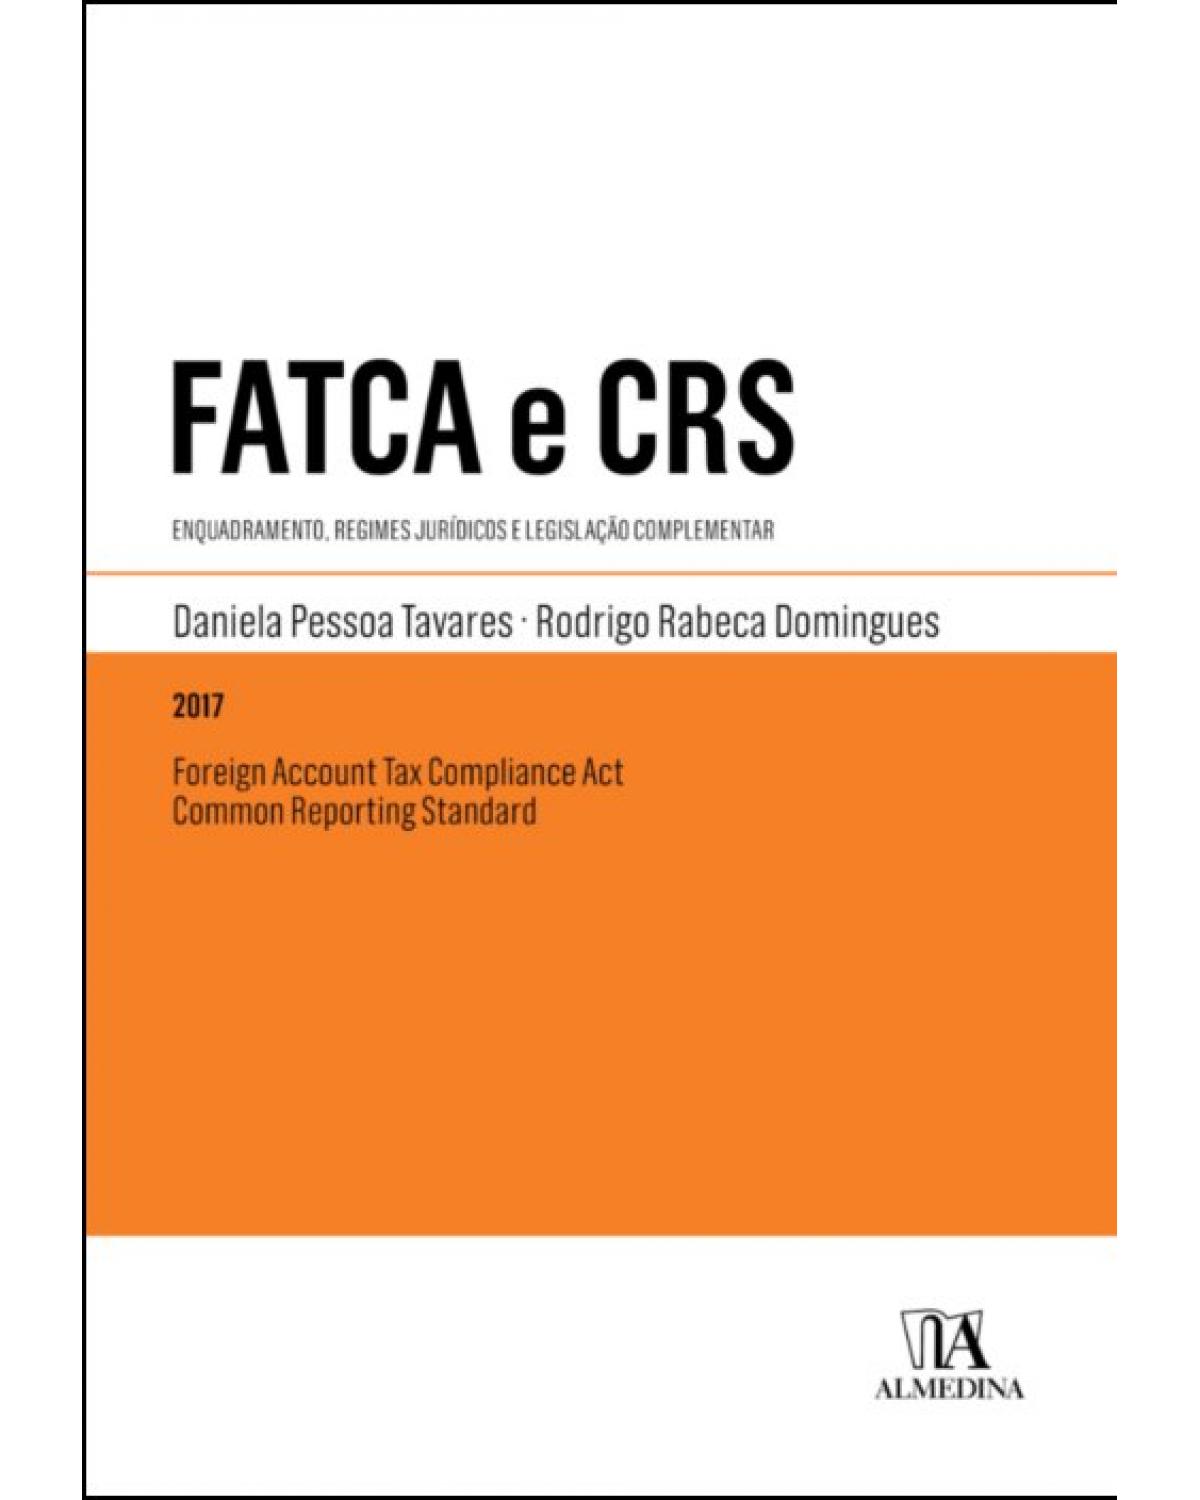 FATCA e CRS - Foreign Account Tax Compliance Act e Common Reporting Standard - enquadramento, regimes jurídicos e legislação complementar - 1ª Edição | 2017